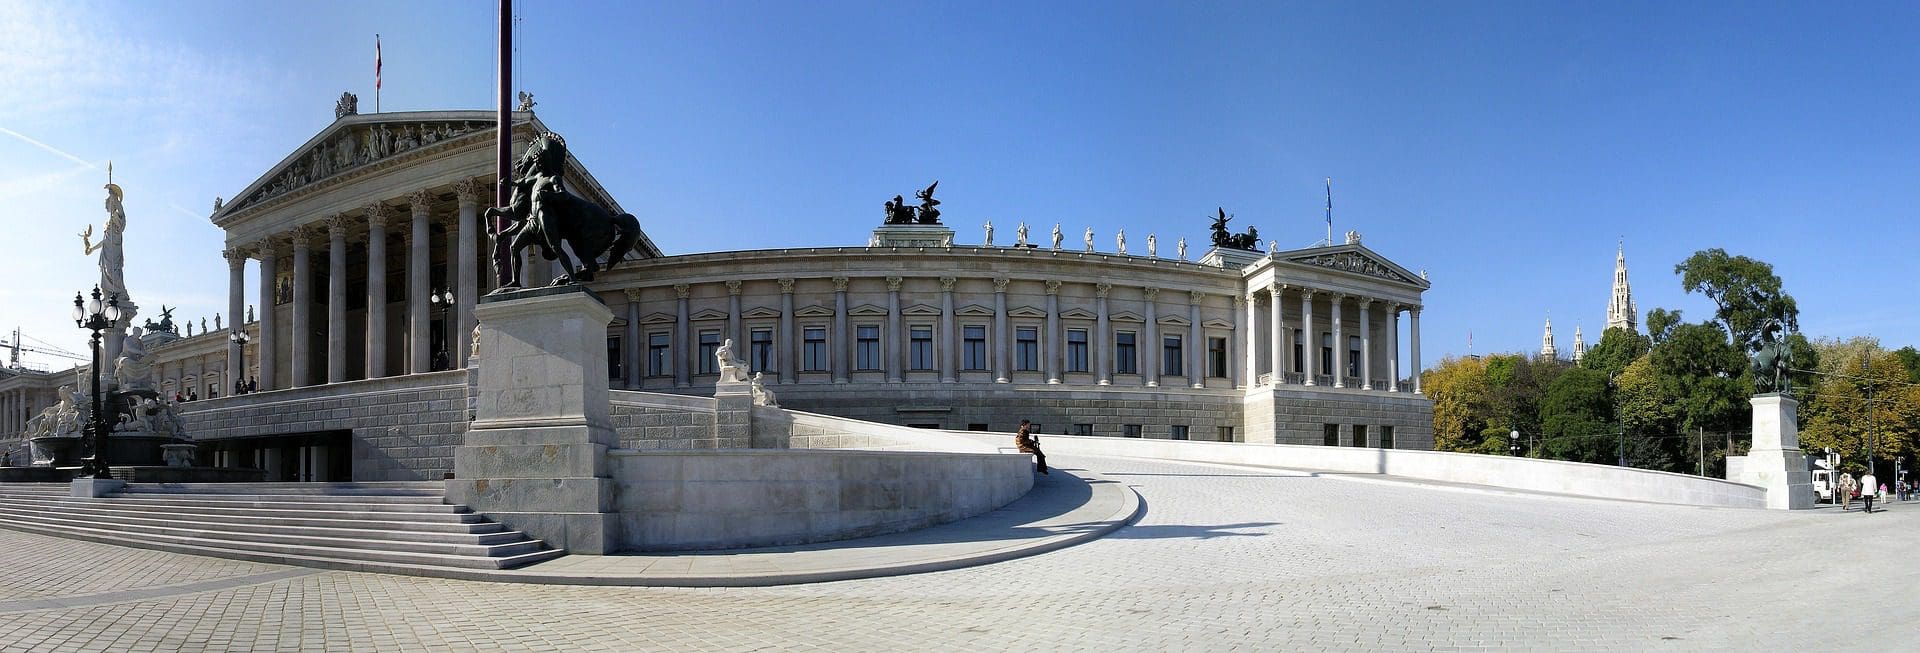 Κτήριο του Κοινοβουλίου στη Βιέννη